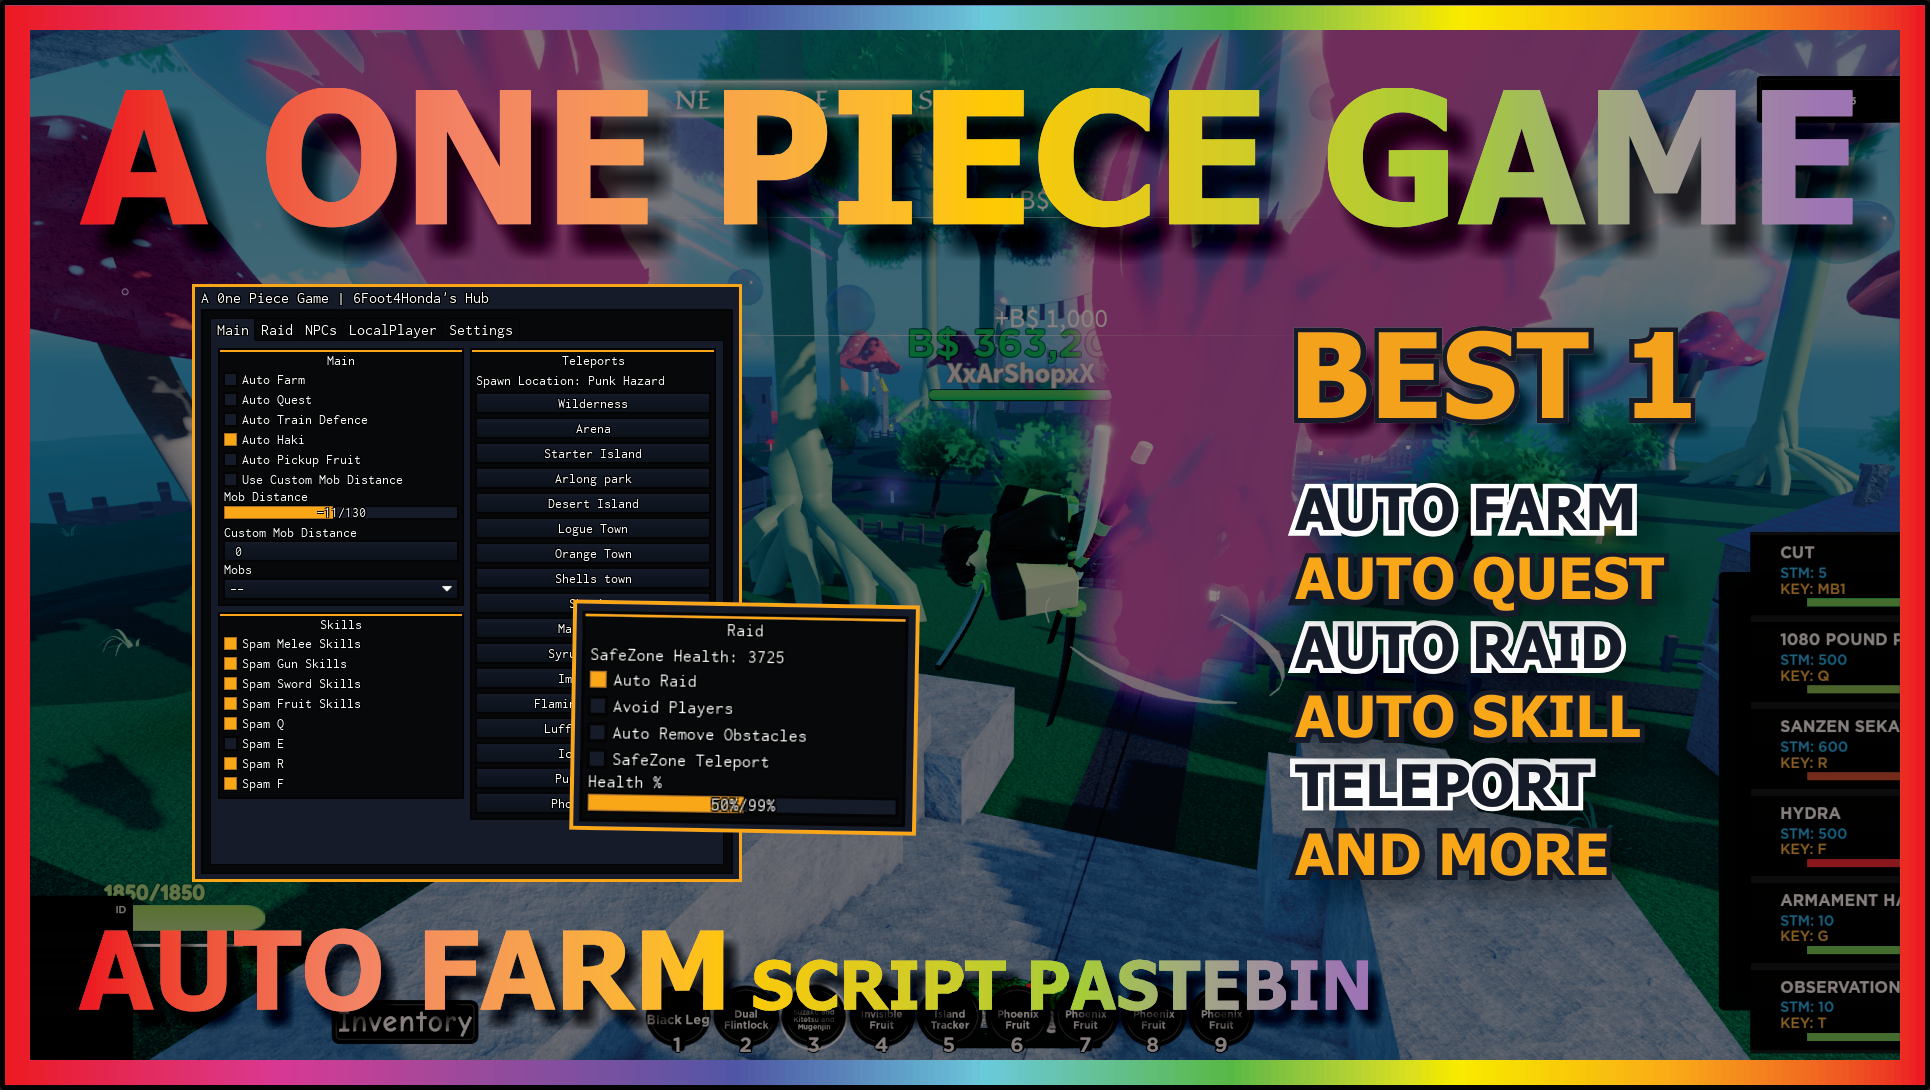 A 0ne Piece Game  Insane GUI - Auto farm, auto quests & MORE!